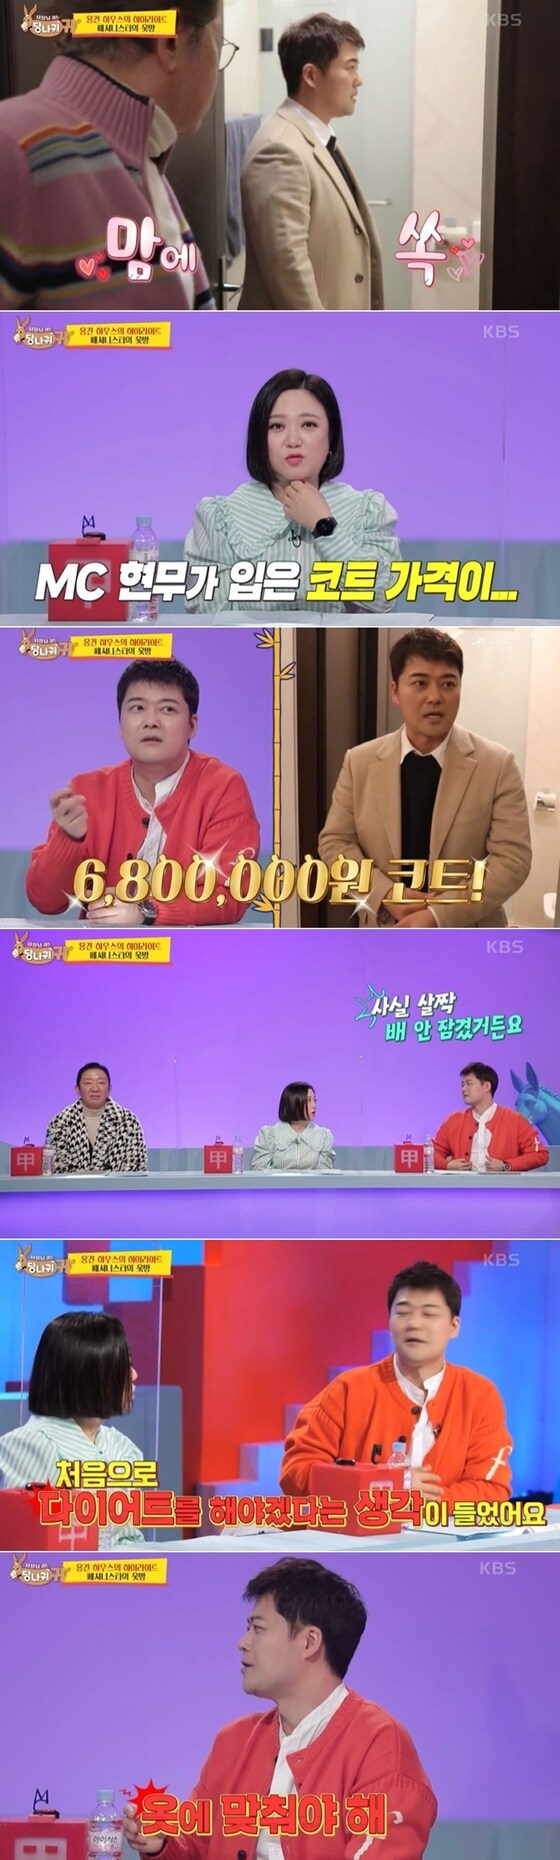 KBS2TV 예능 프로그램 '사장님 귀는 당나귀 귀' 방송 화면 갈무리 © 뉴스1